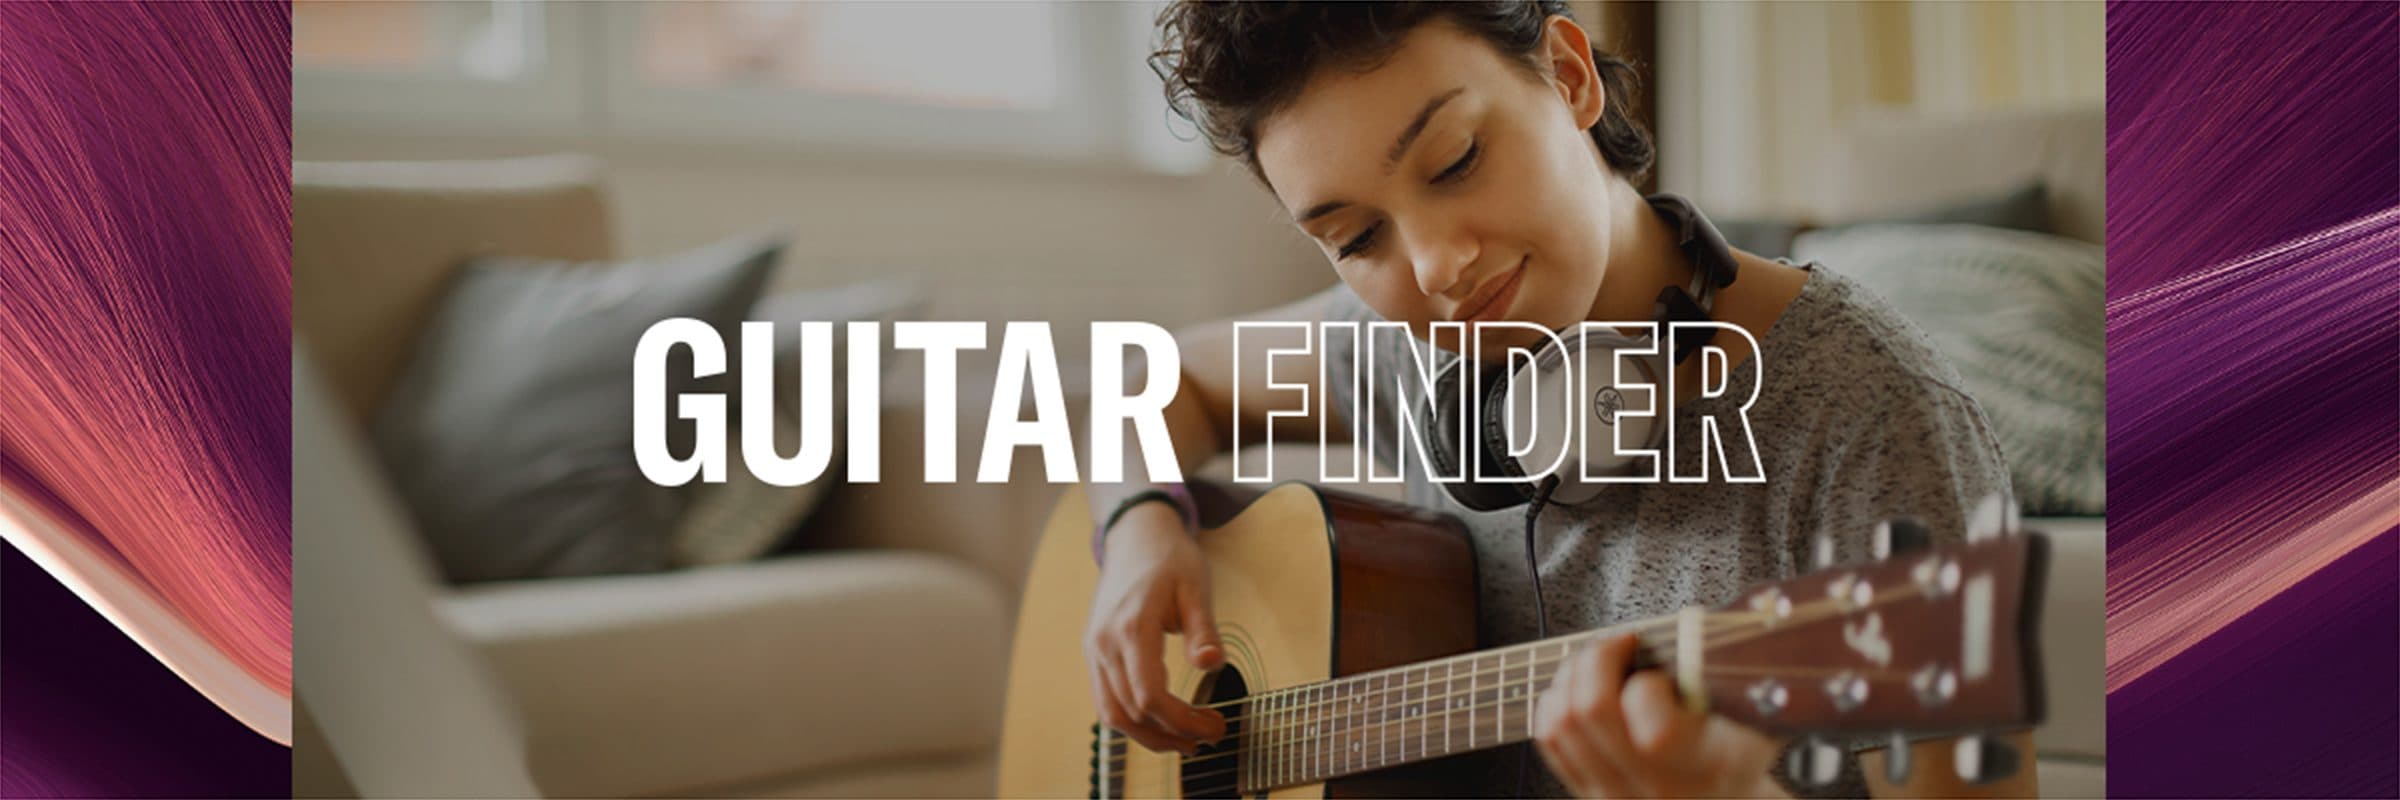 Guitar Finder